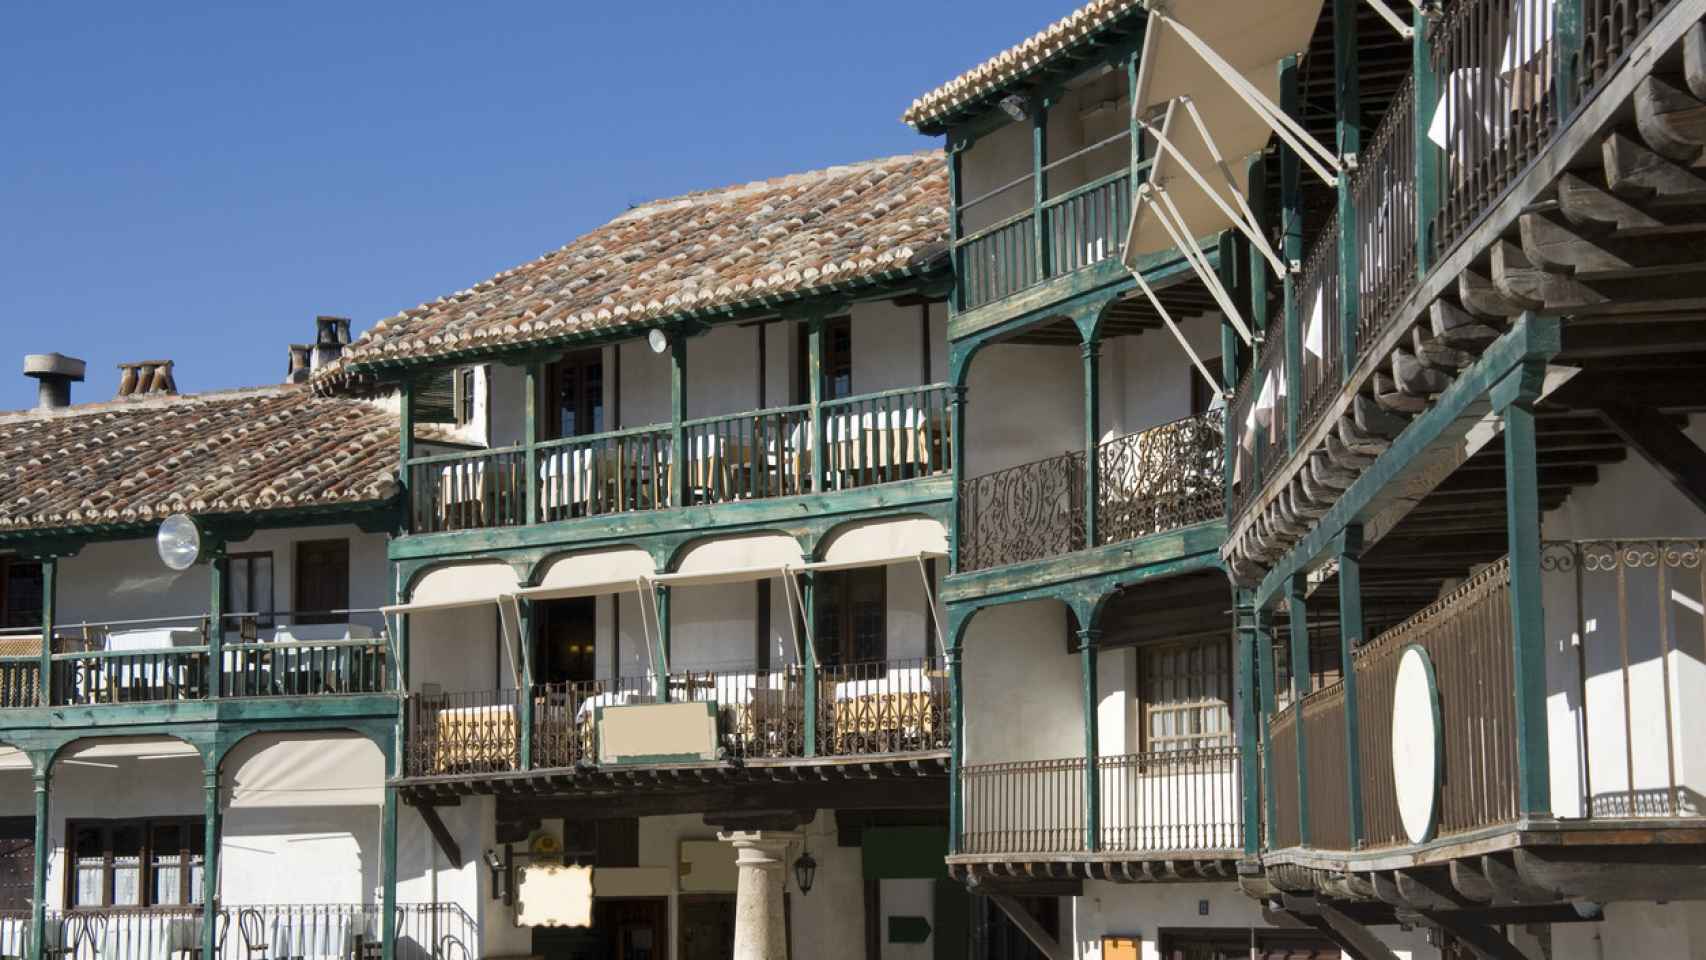 Chinchon-Balcón de casas, detalle de Plaza Mayor, España